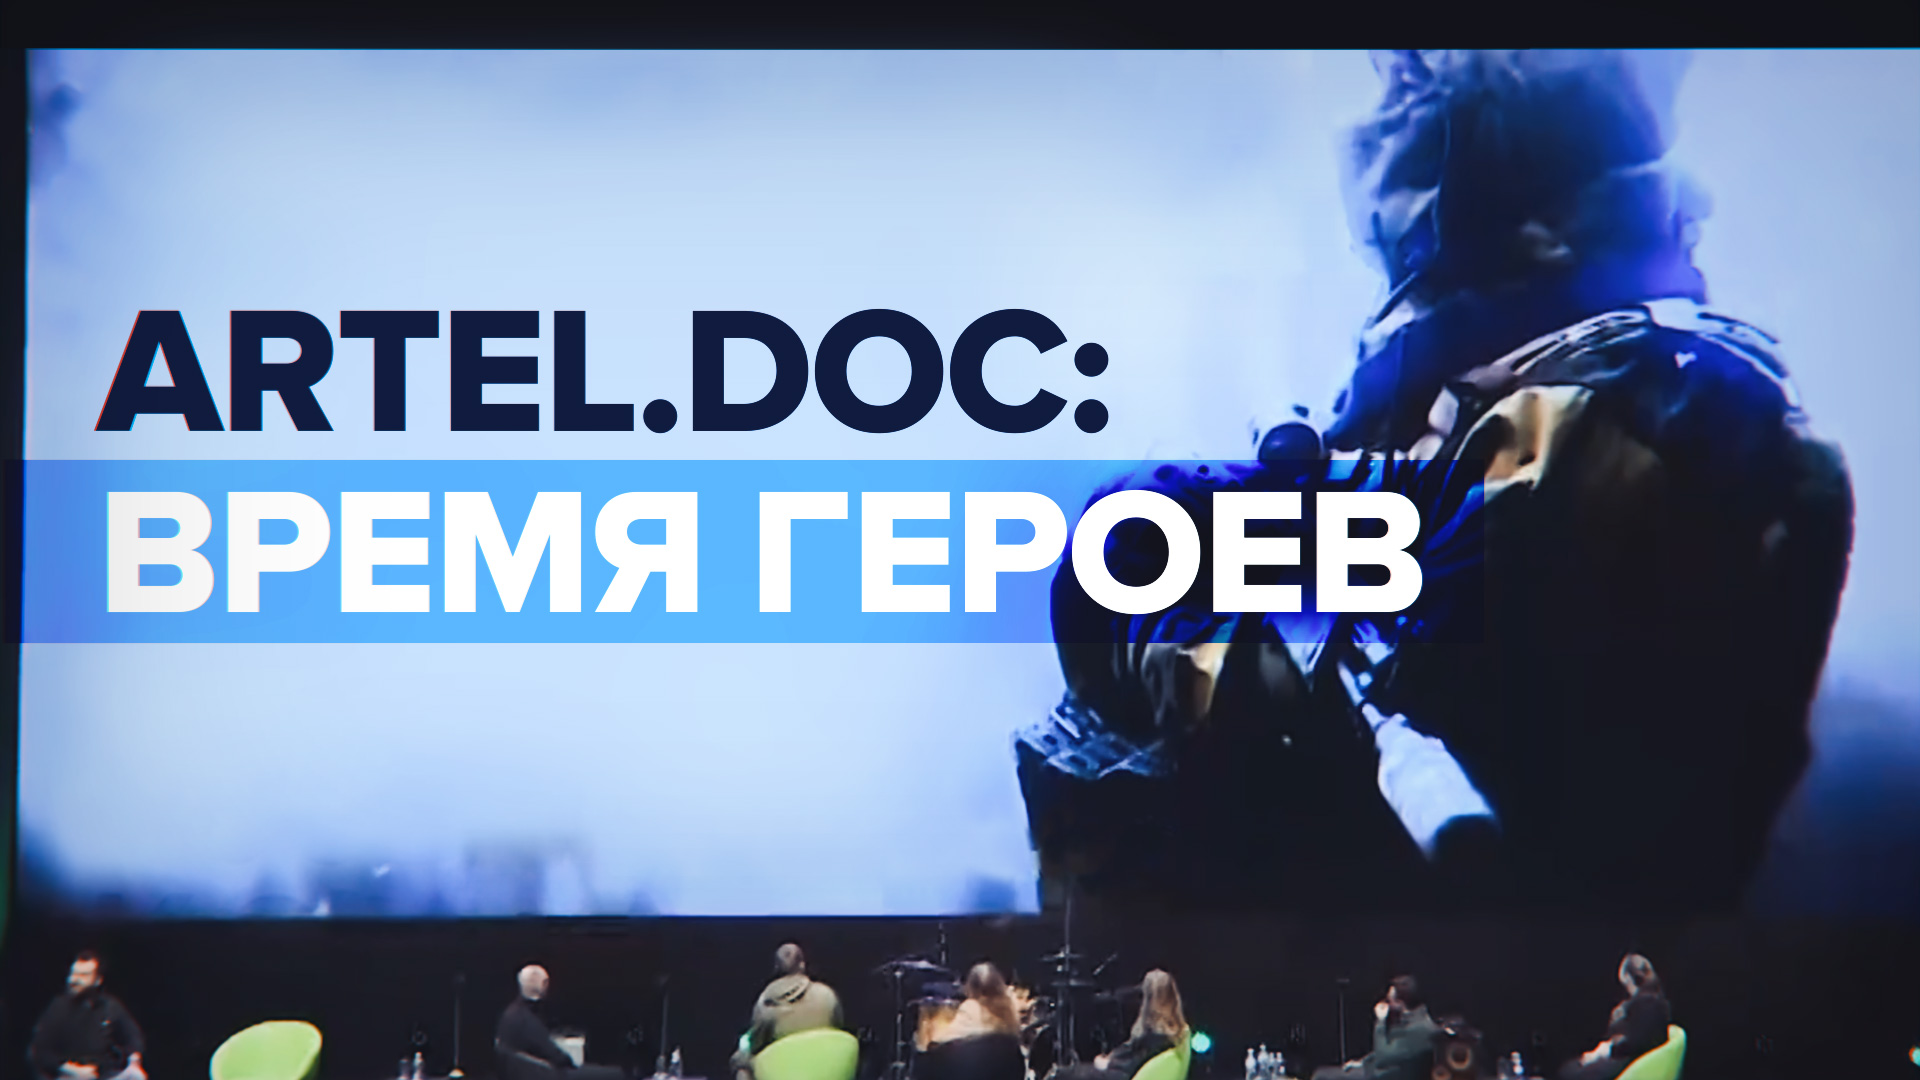 «aRTel.doc: Время героев»: в Москве завершился фестиваль документального кино